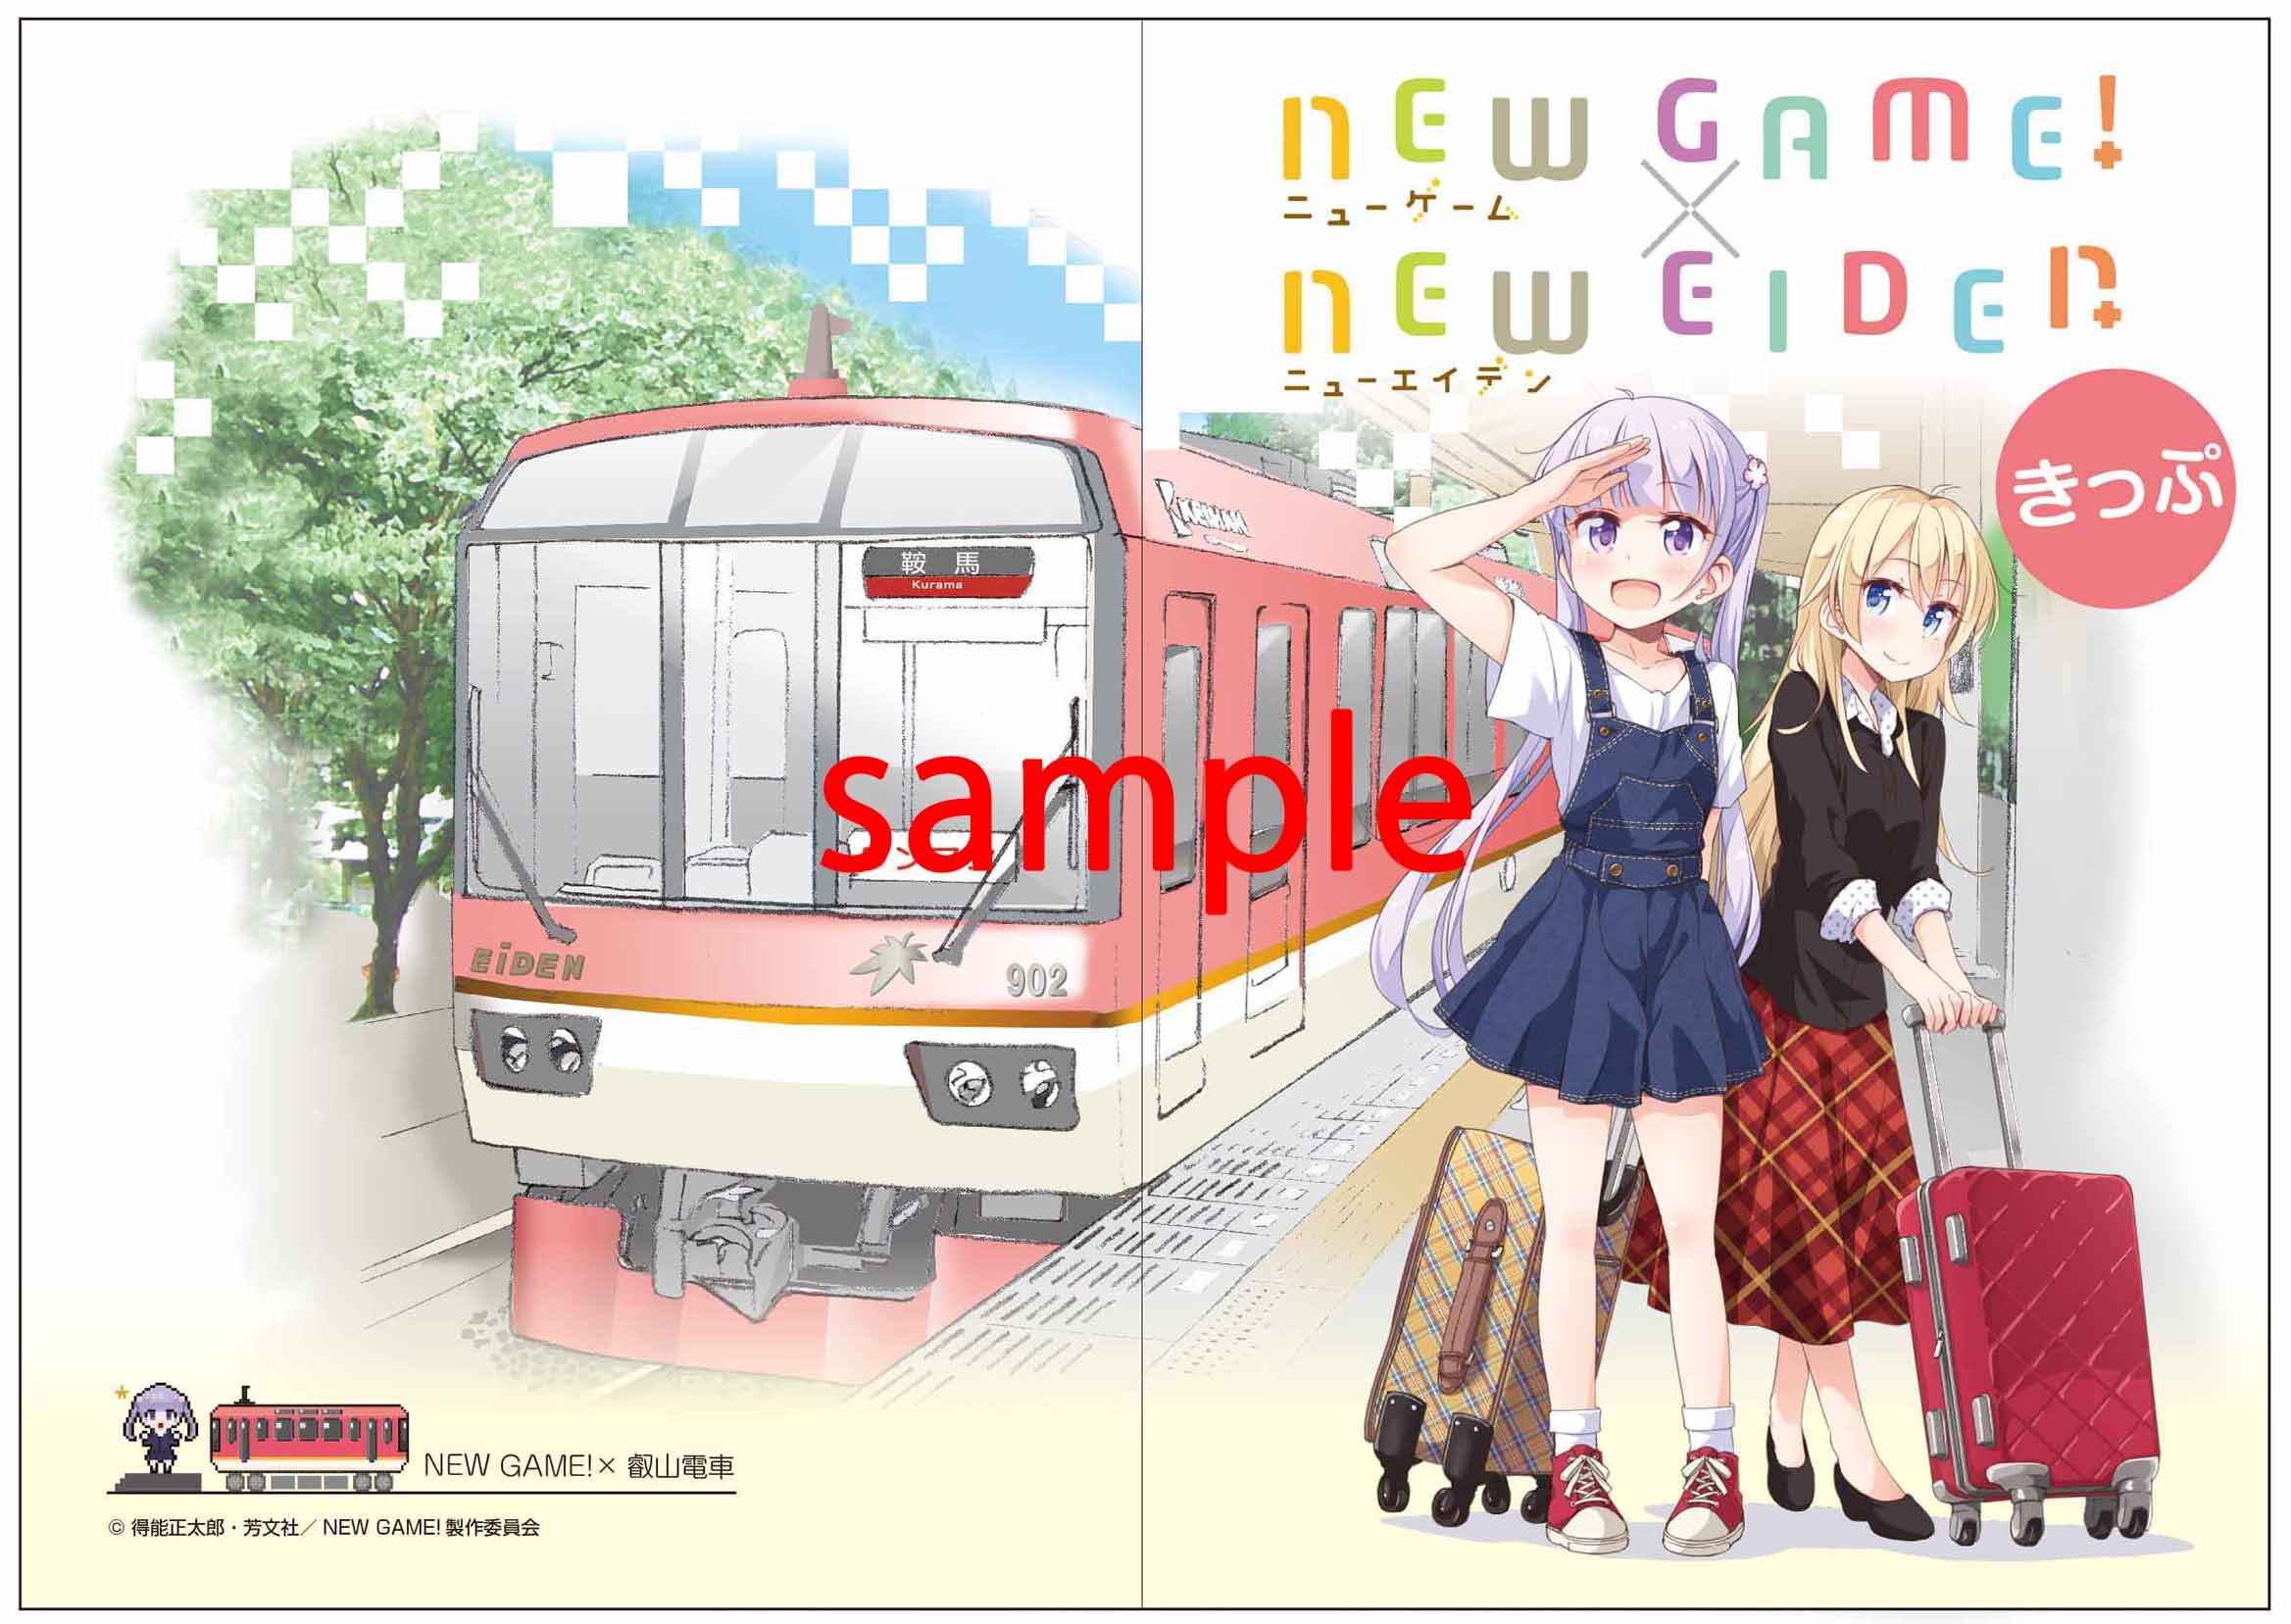 展望列車「きらら」とアニメ『NEW GAME!』のコラボが決定!